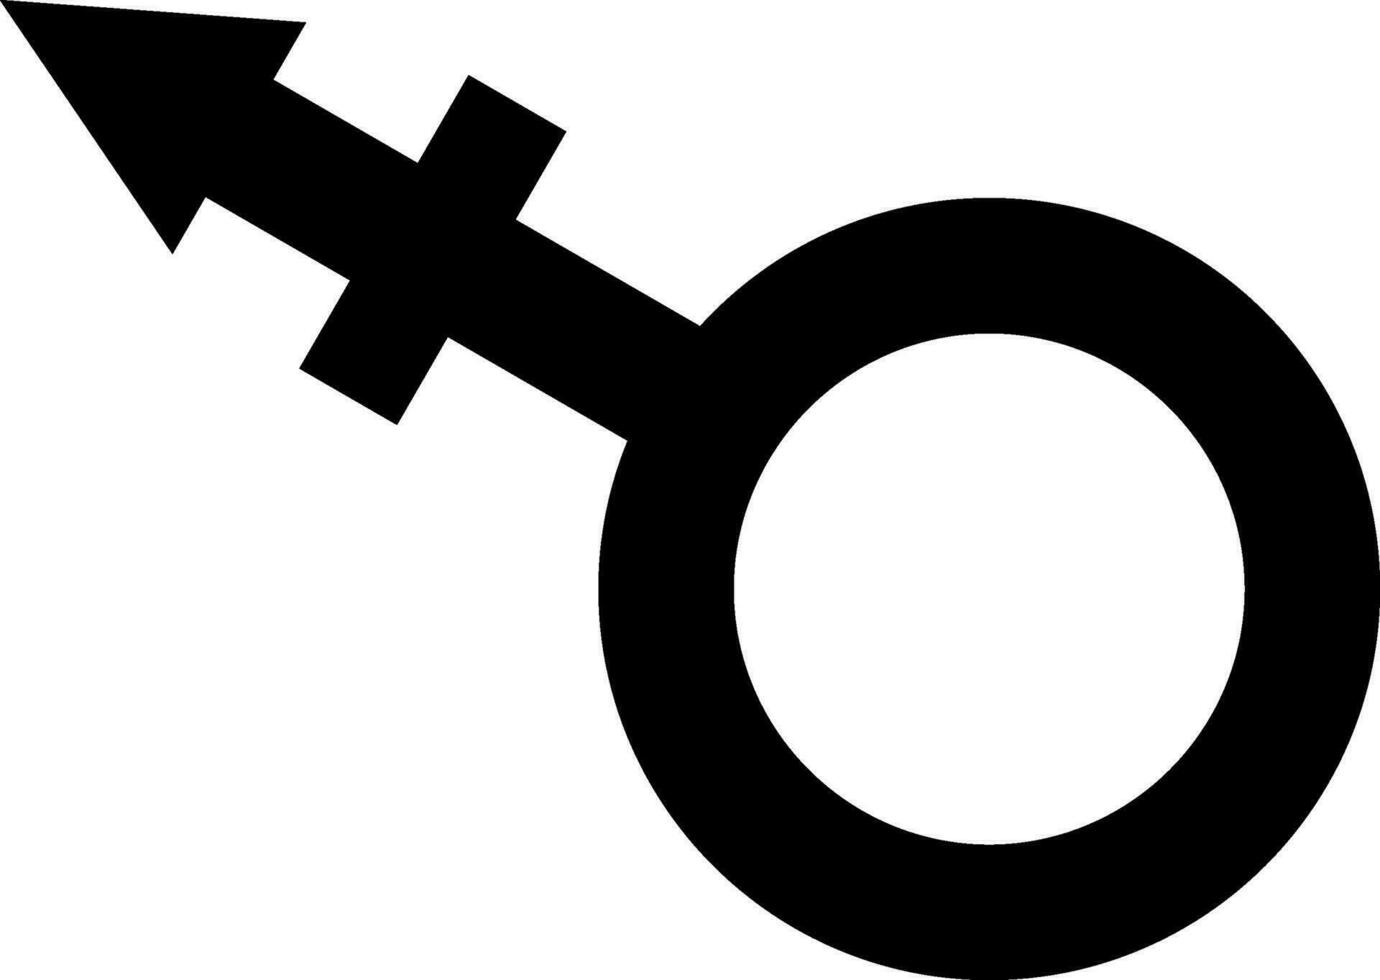 sgn symbole le sexe égalité Masculin femelle transgenres égalité concept vecteur